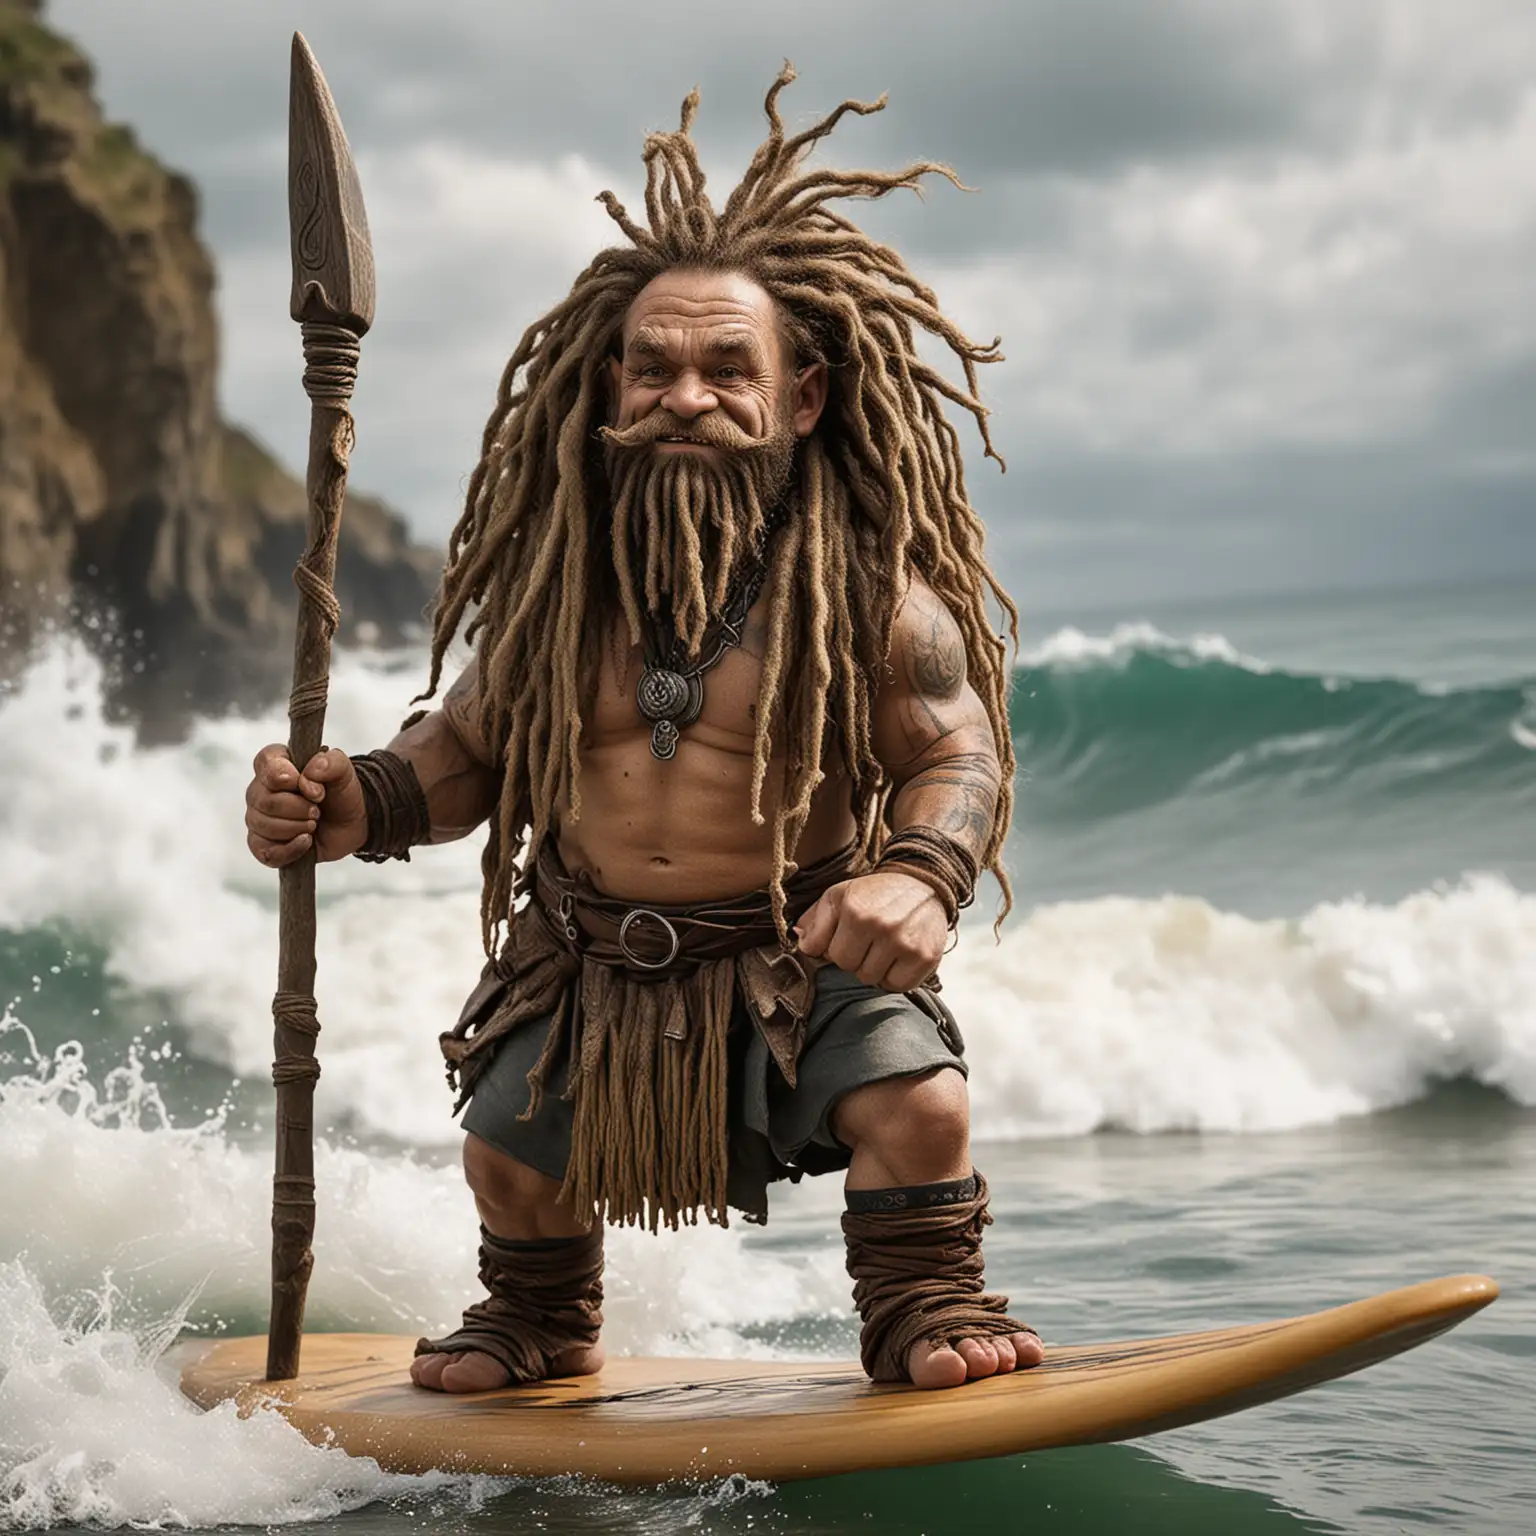 Dreadlocked Dwarf Surfing with Spear Fantasy Beach Adventure Art